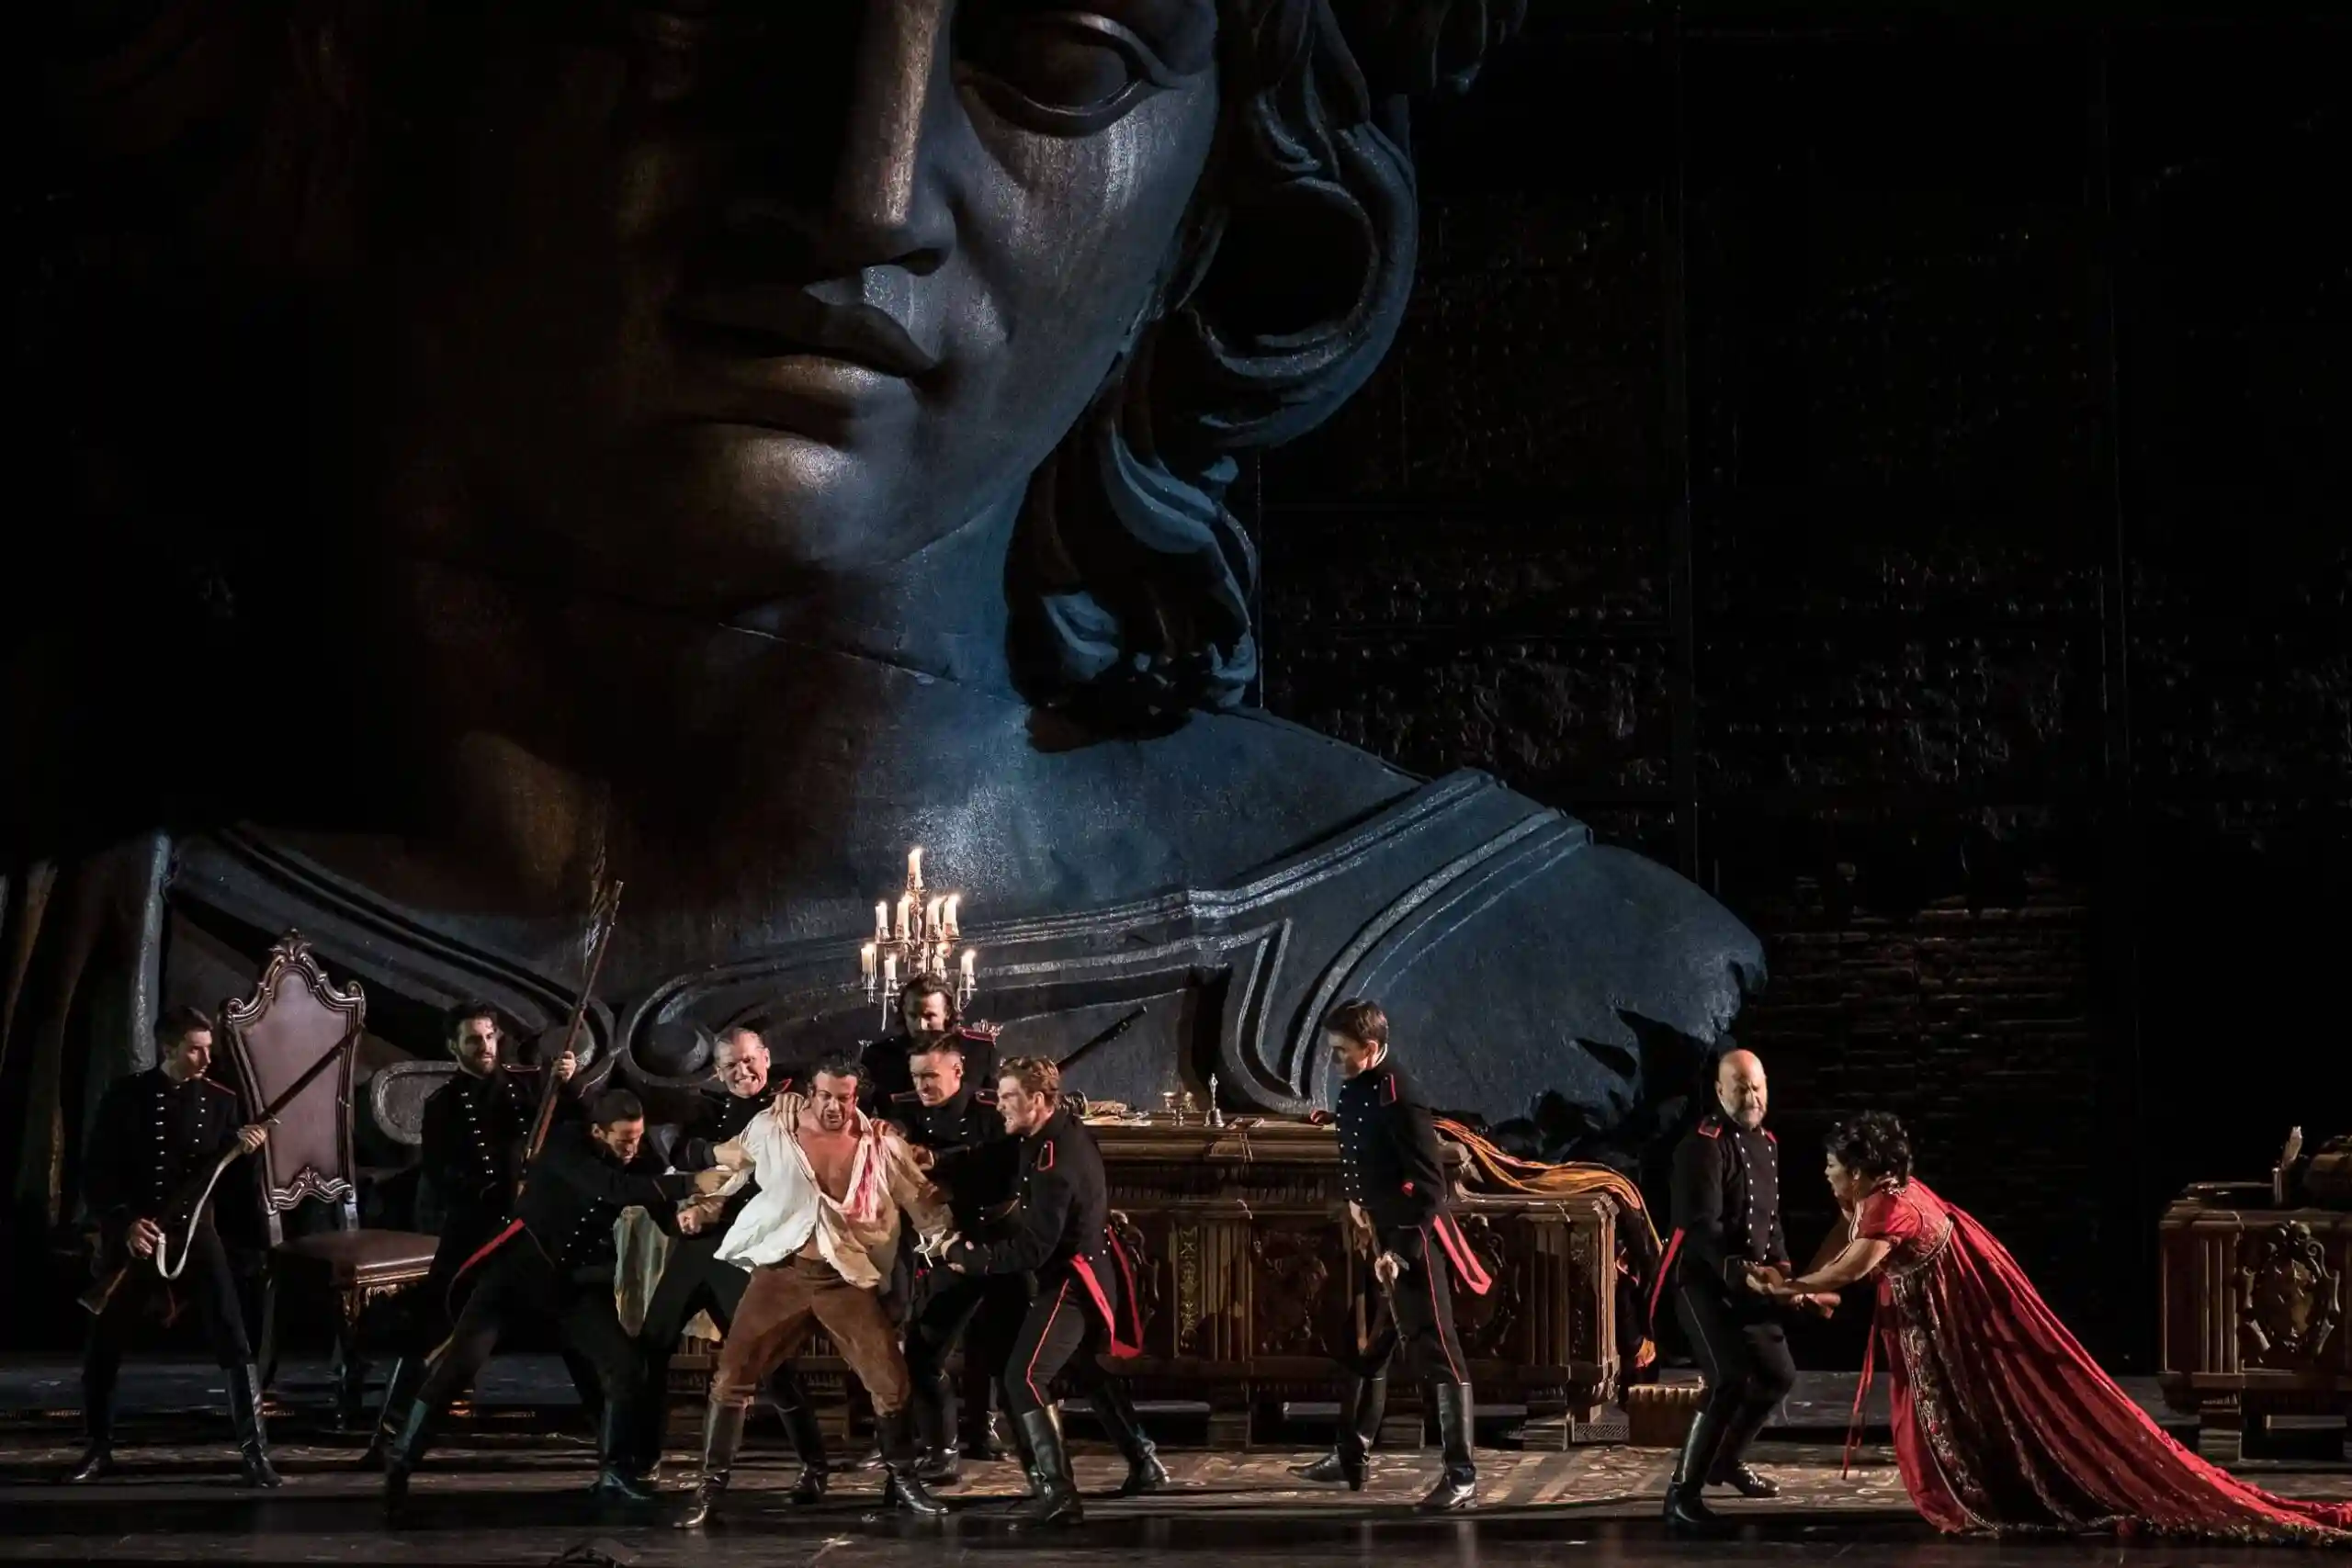 La Tosca di Puccini secondo Hugo de Ana in scena dal 29 luglio 